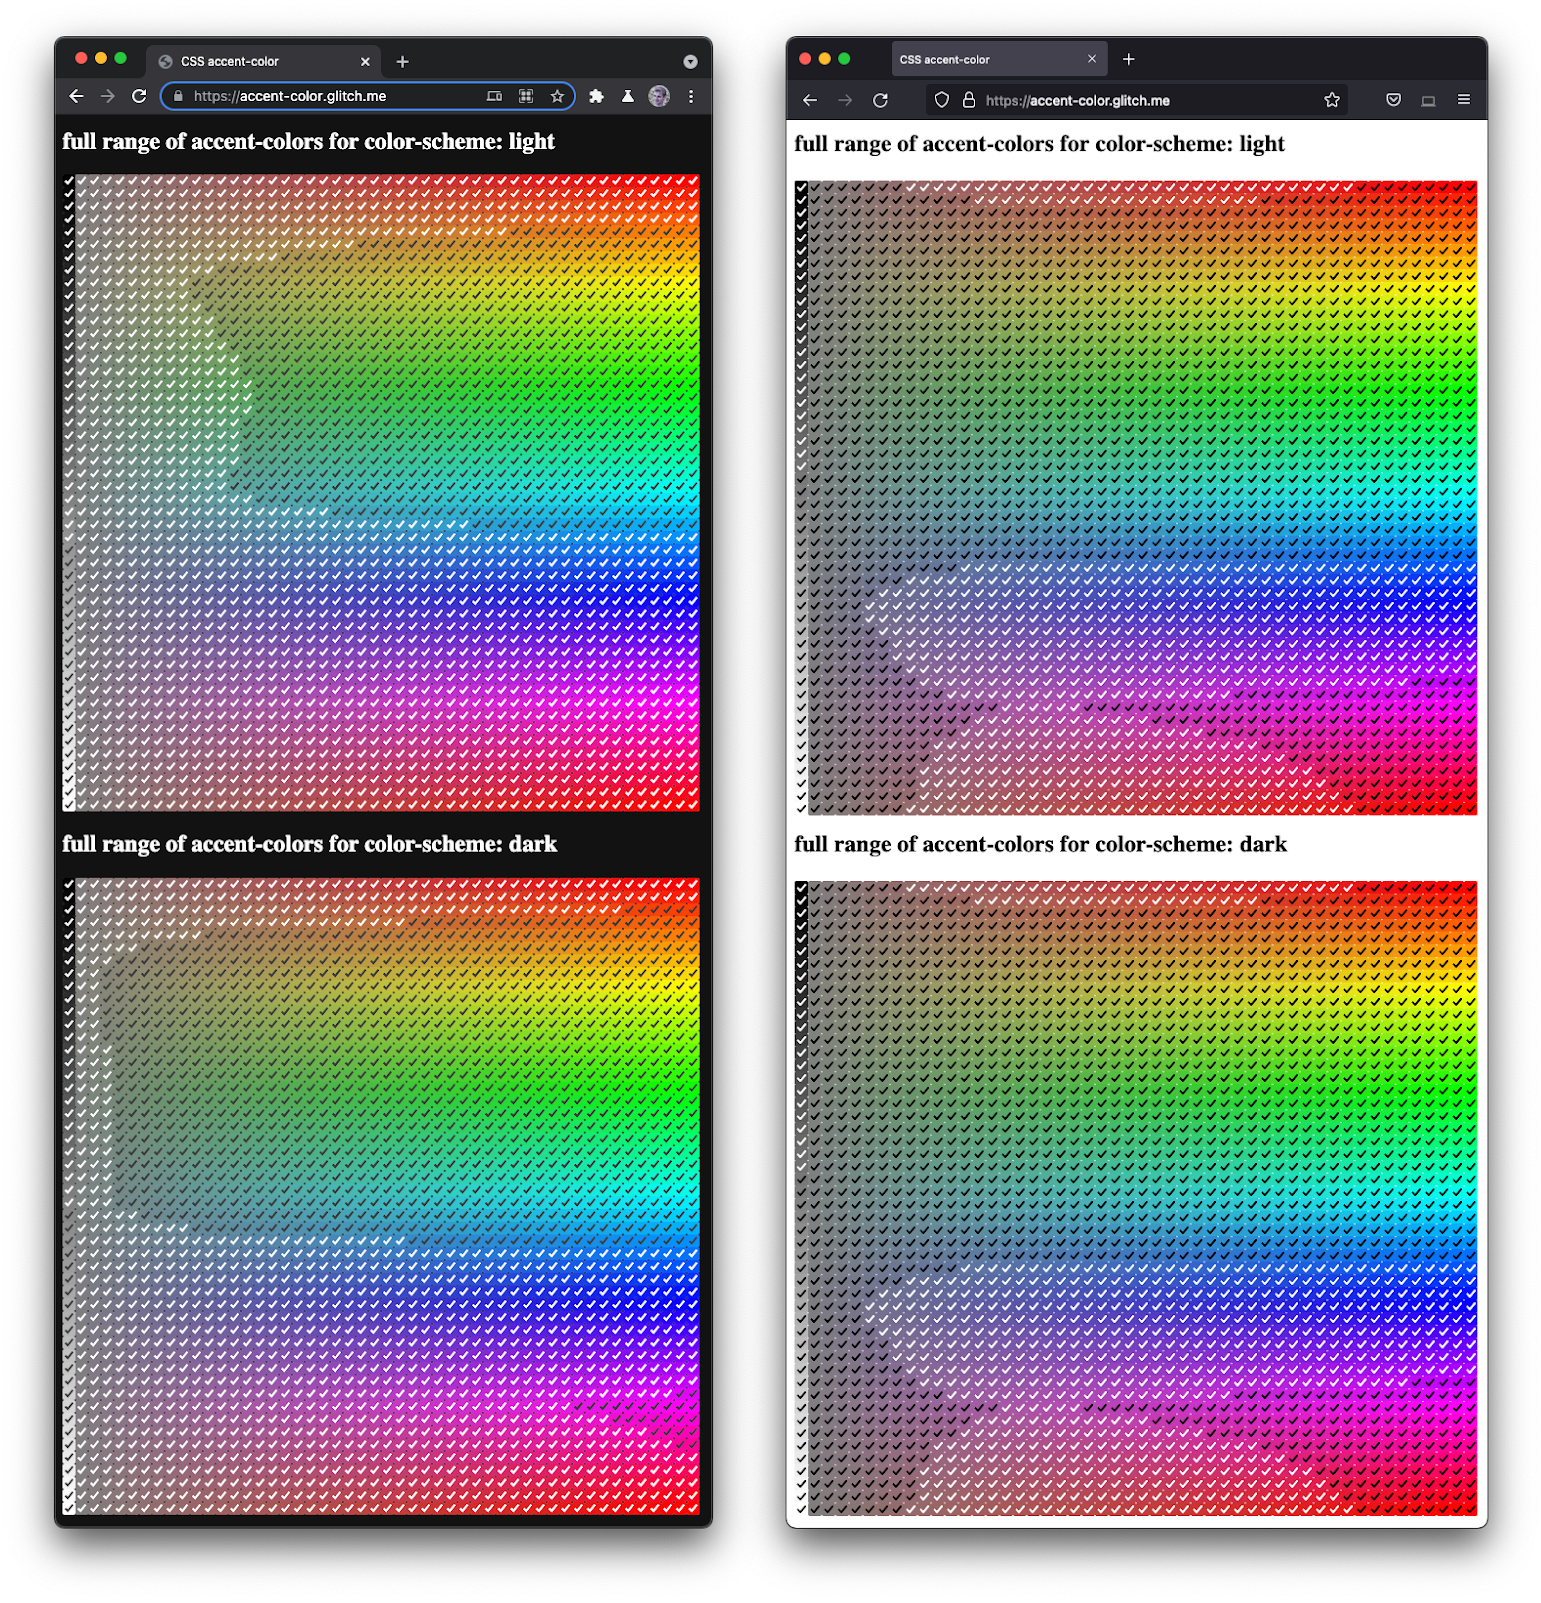 Снимок экрана Firefox и Chromium, отображающий полный спектр флажков различных оттенков и темноты.